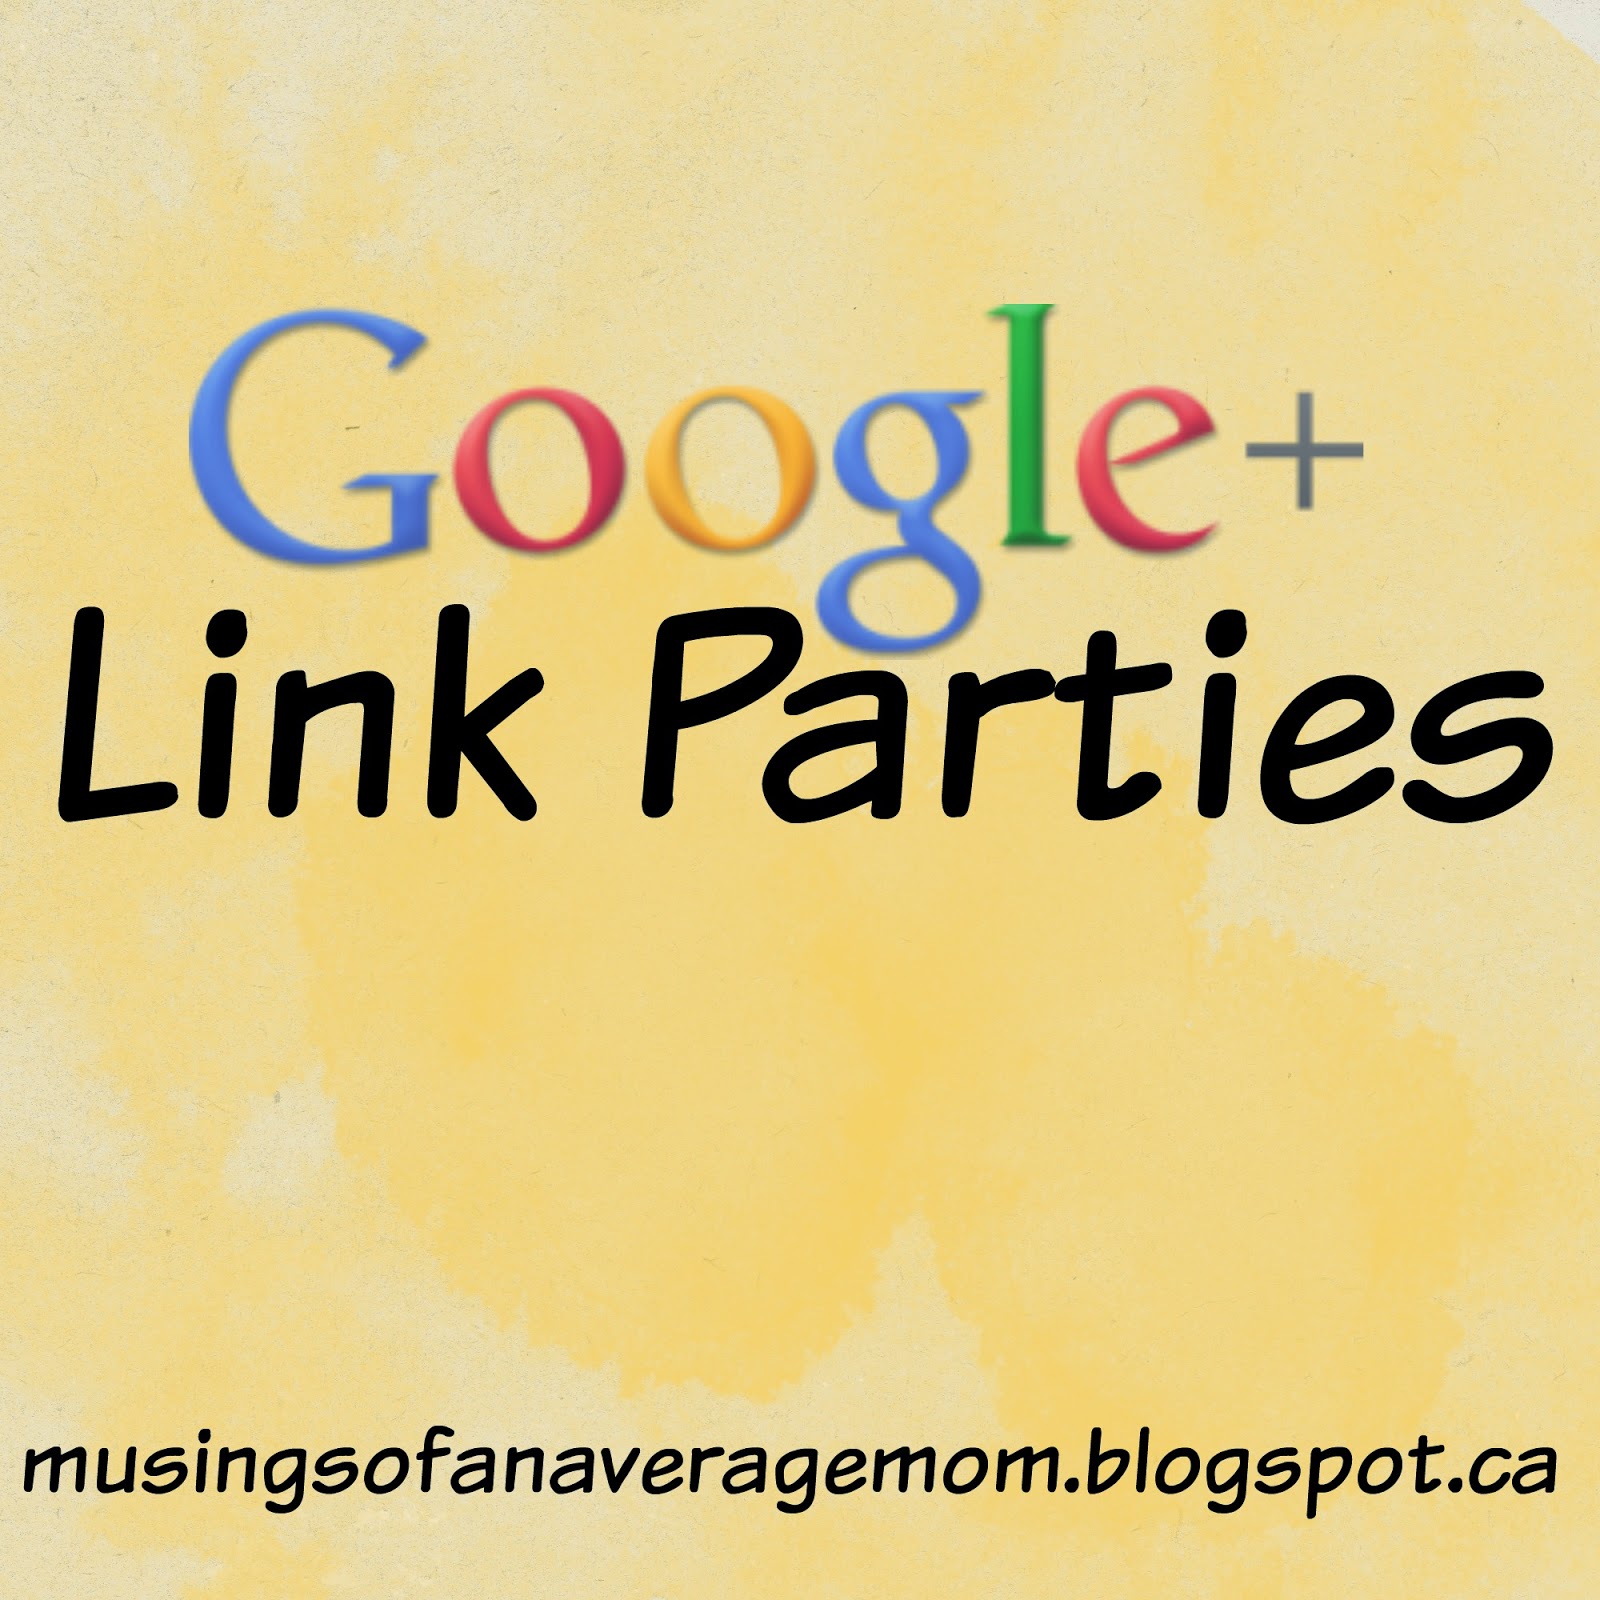 http://musingsofanaveragemom.blogspot.ca/2015/05/google-link-parties.html